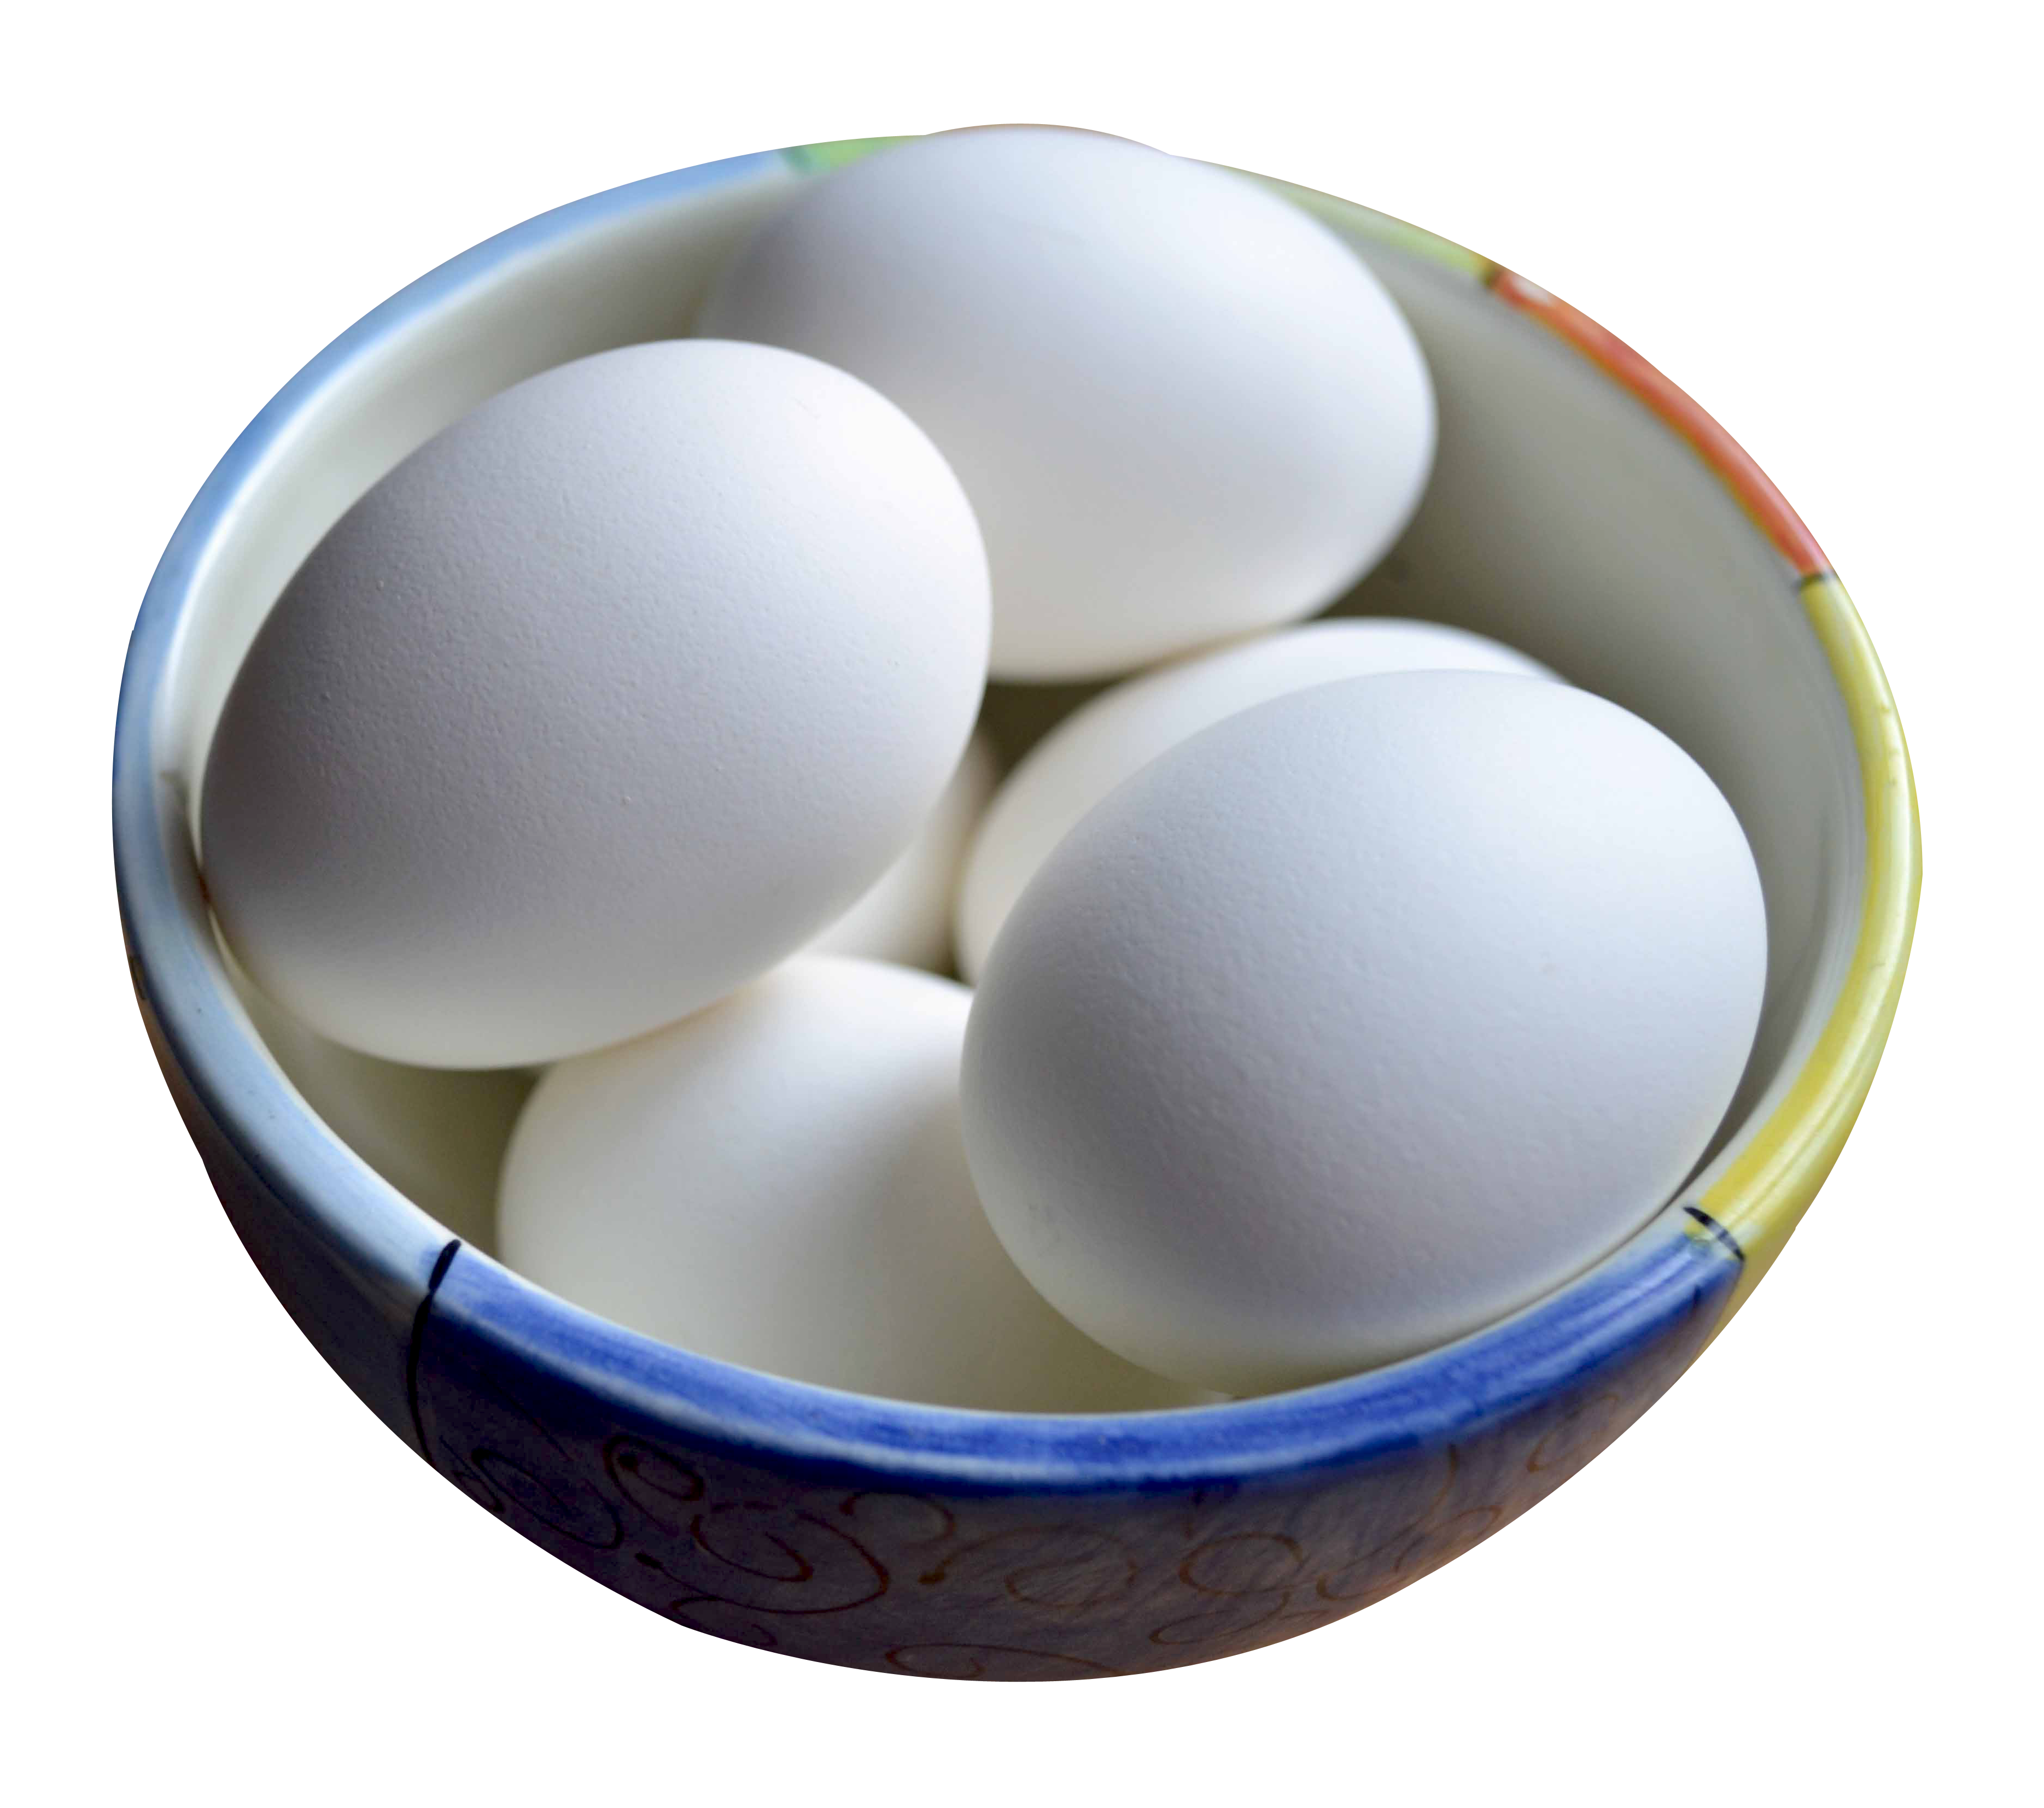 Bowlof White Eggs